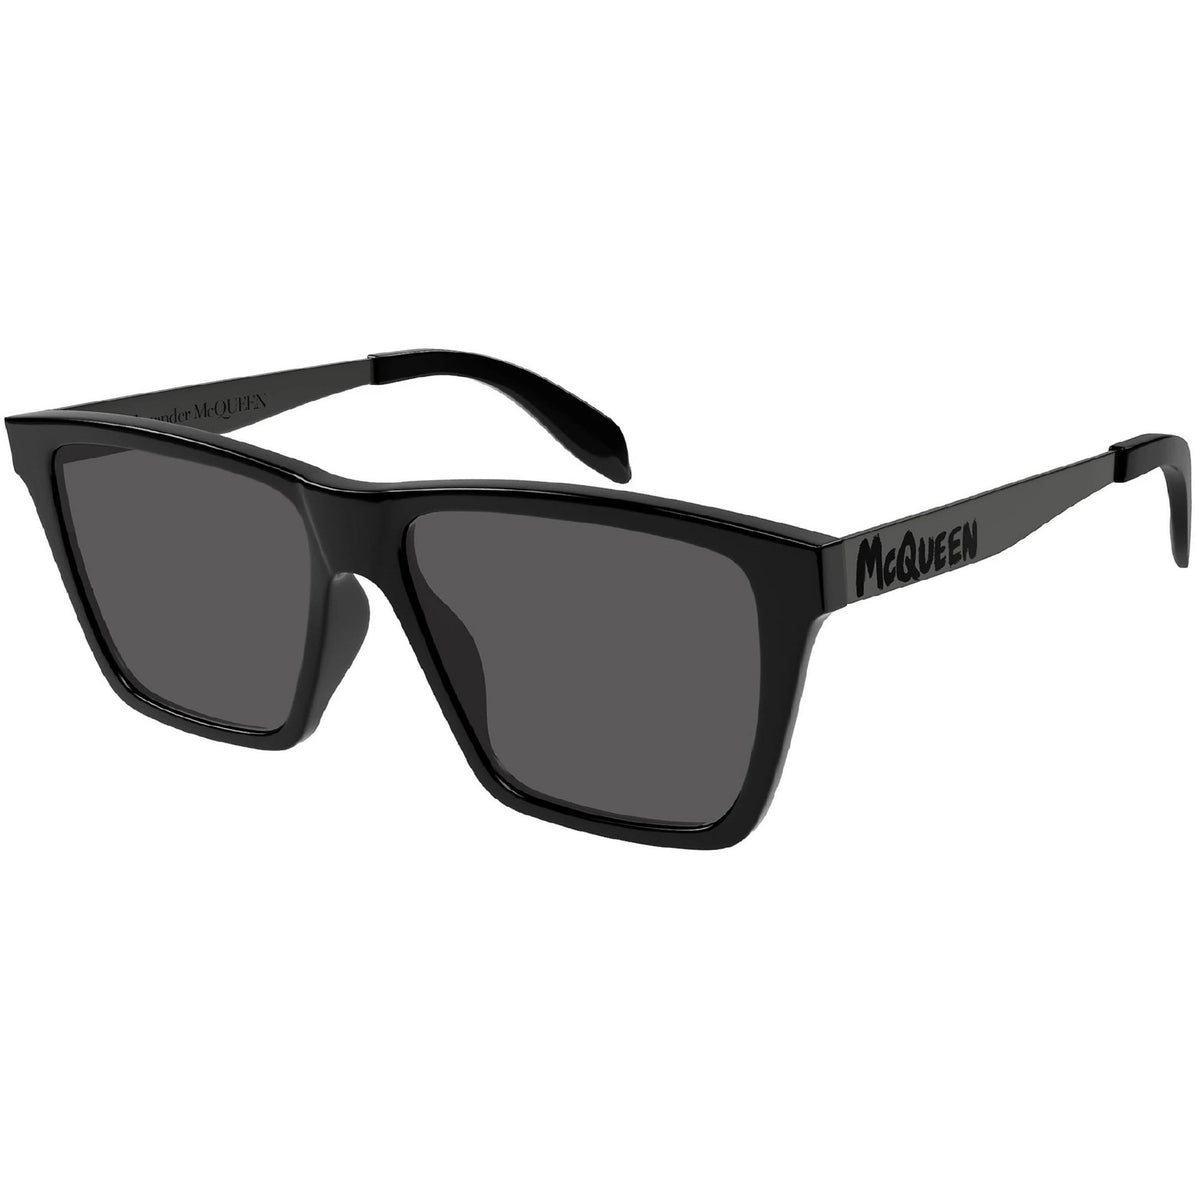 Alexander McQueen Men&#39;s Sunglasses Spring Summer Black Grey CR 39 CR 39 Shiny AM0352S 001